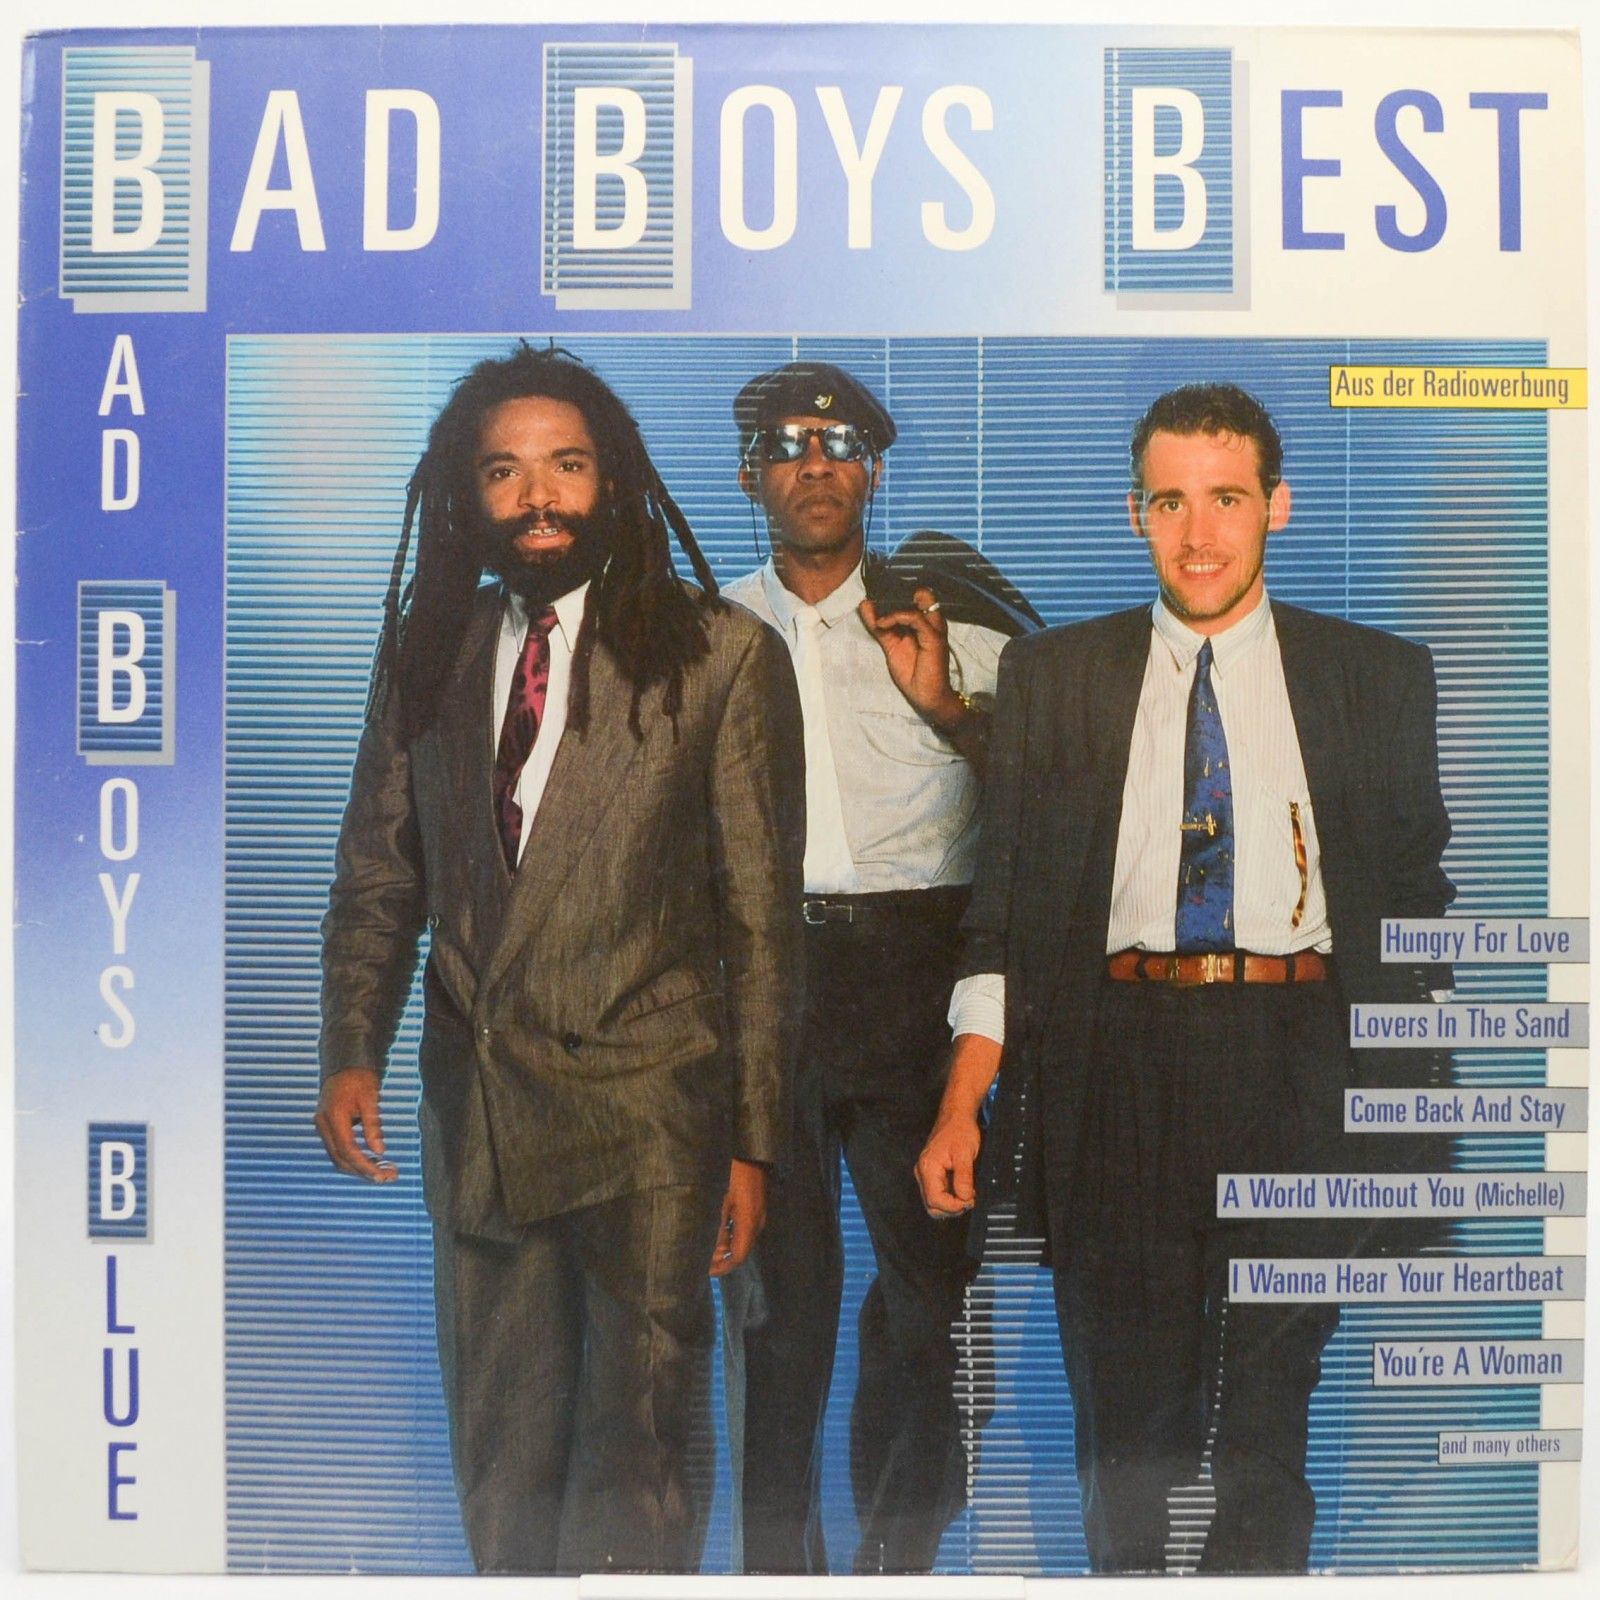 Bad Boys Blue — Bad Boys Best, 1989